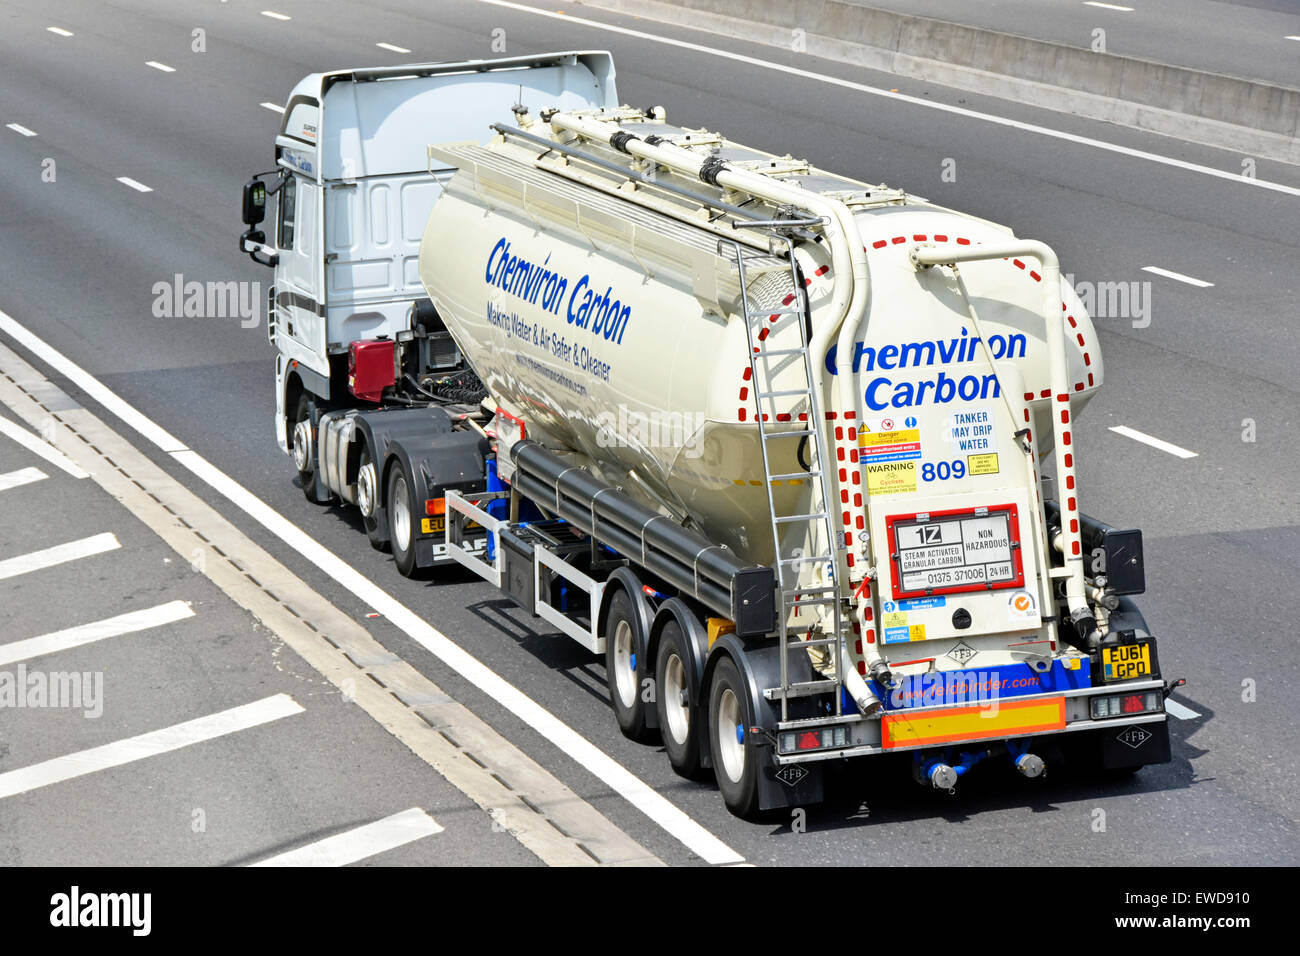 Vue arrière carbone granulaire remorque-citerne camion poids lourd articulé& camion couverts avec Santé et sécurité & automobile panneaux d'avertissement de la conduite sur autoroute britannique Banque D'Images